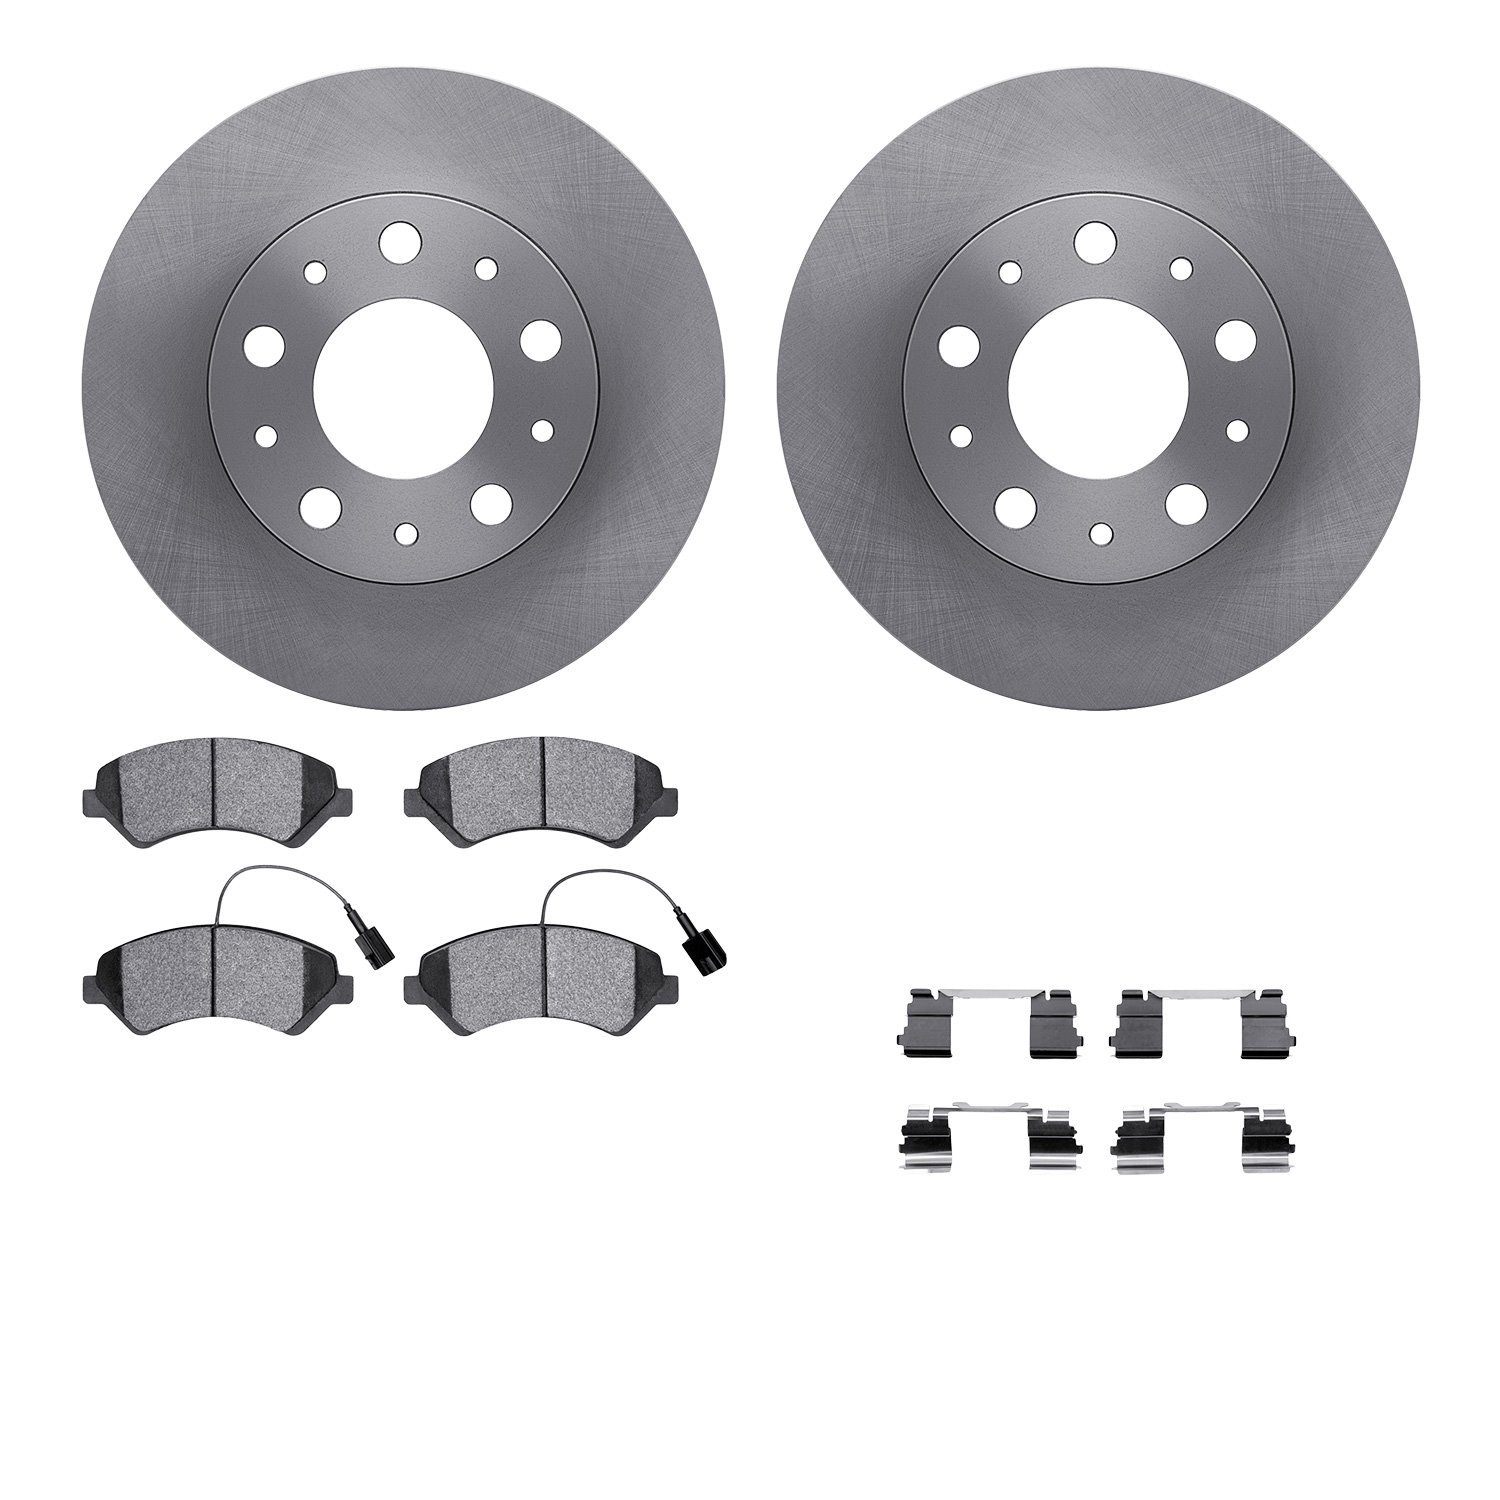 6212-40499 Brake Rotors w/Heavy-Duty Brake Pads Kit & Hardware, 2014-2021 Mopar, Position: Front